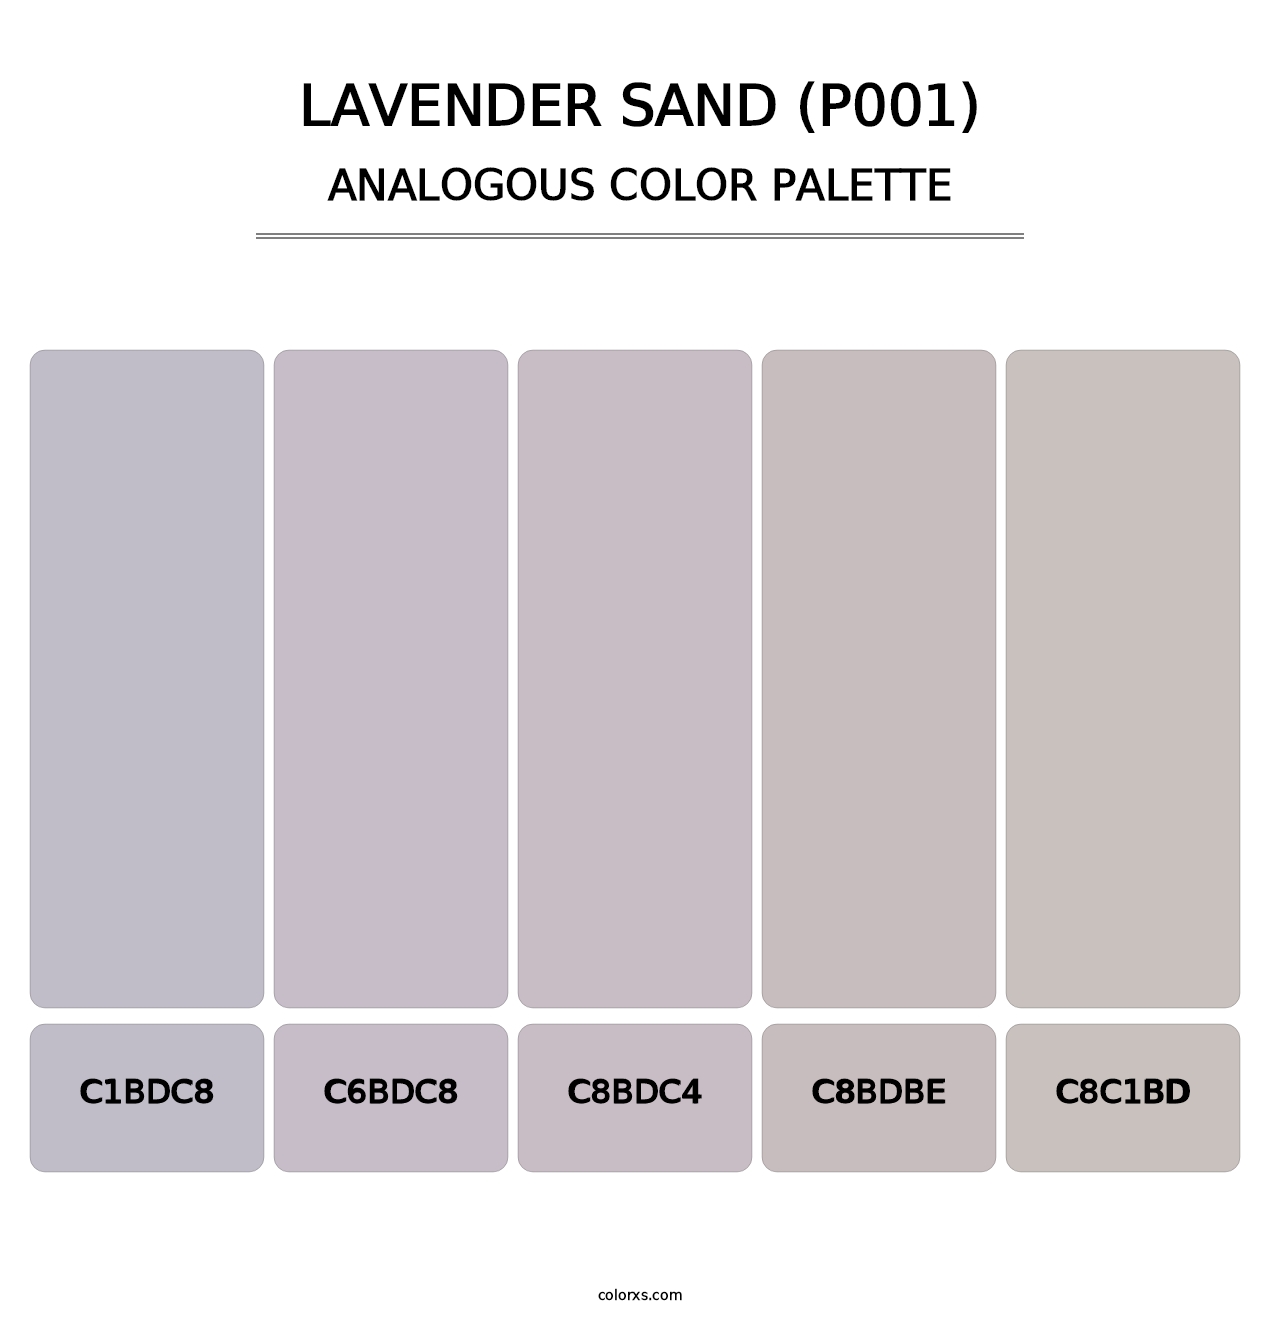 Lavender Sand (P001) - Analogous Color Palette